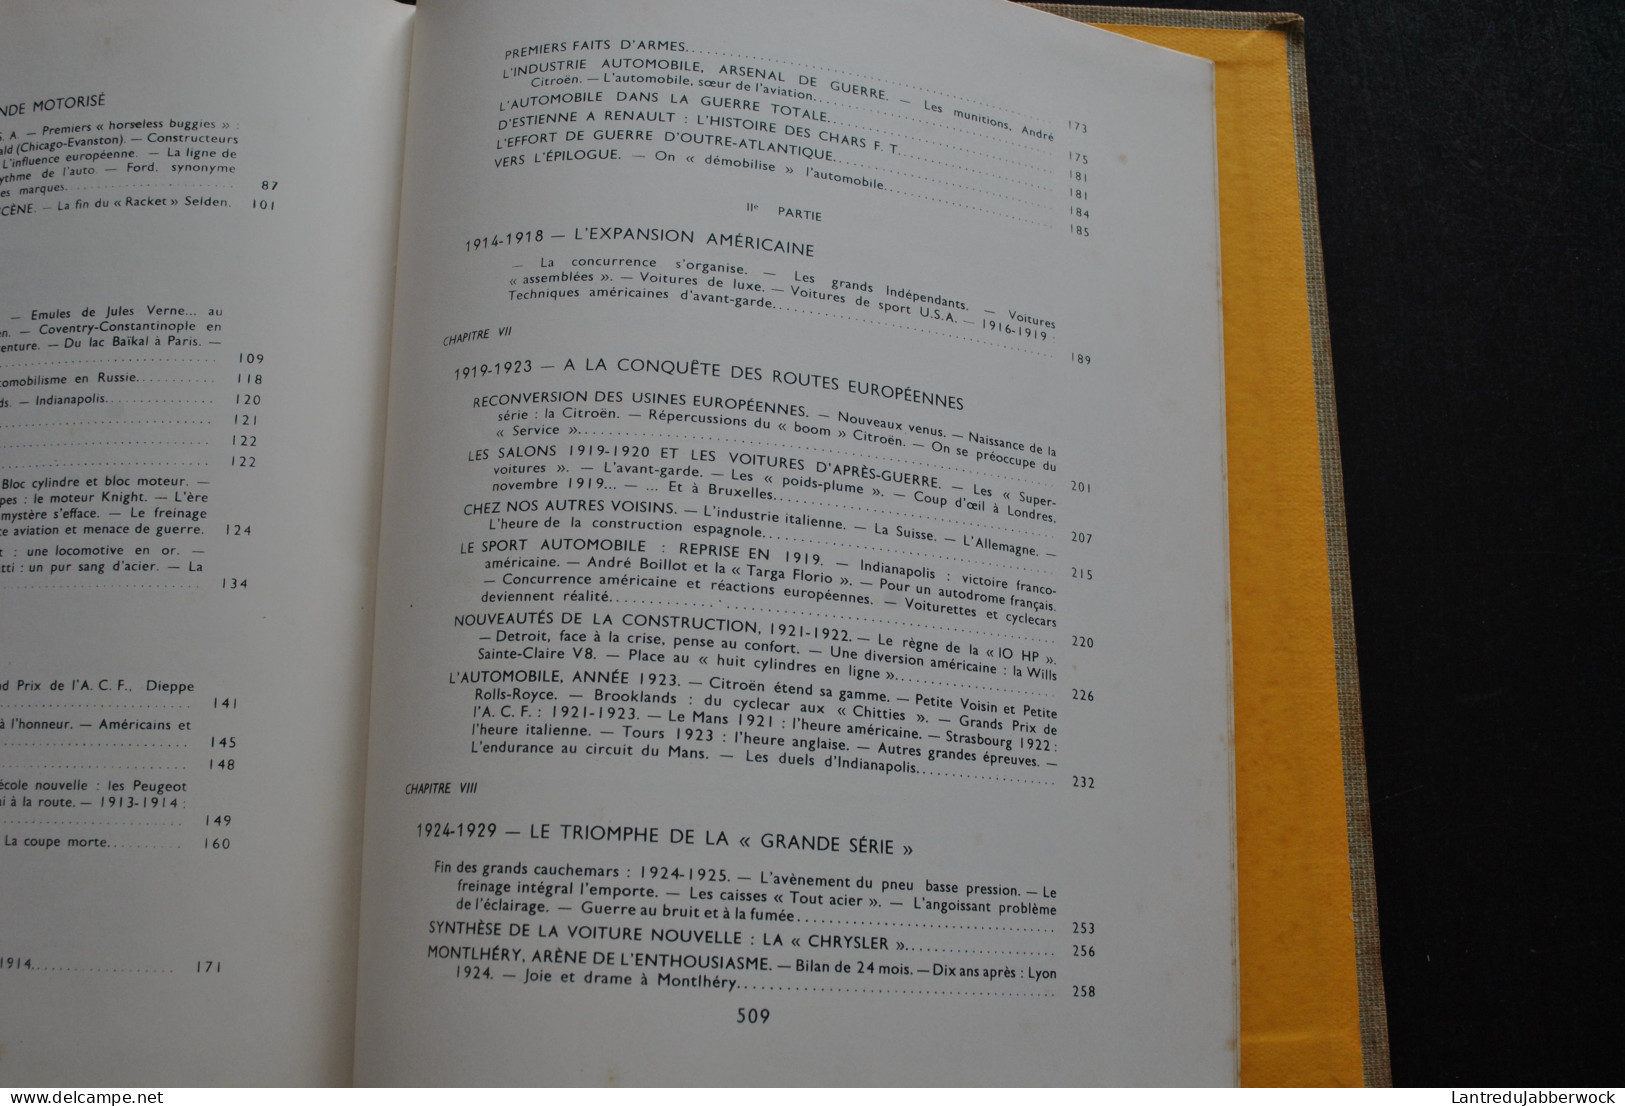 JACQUES ROUSSEAU HISTOIRE MONDIALE DE L'AUTOMOBILE 1958 Hachette encyclopédie voiture grnad prix luxe pilotes rare